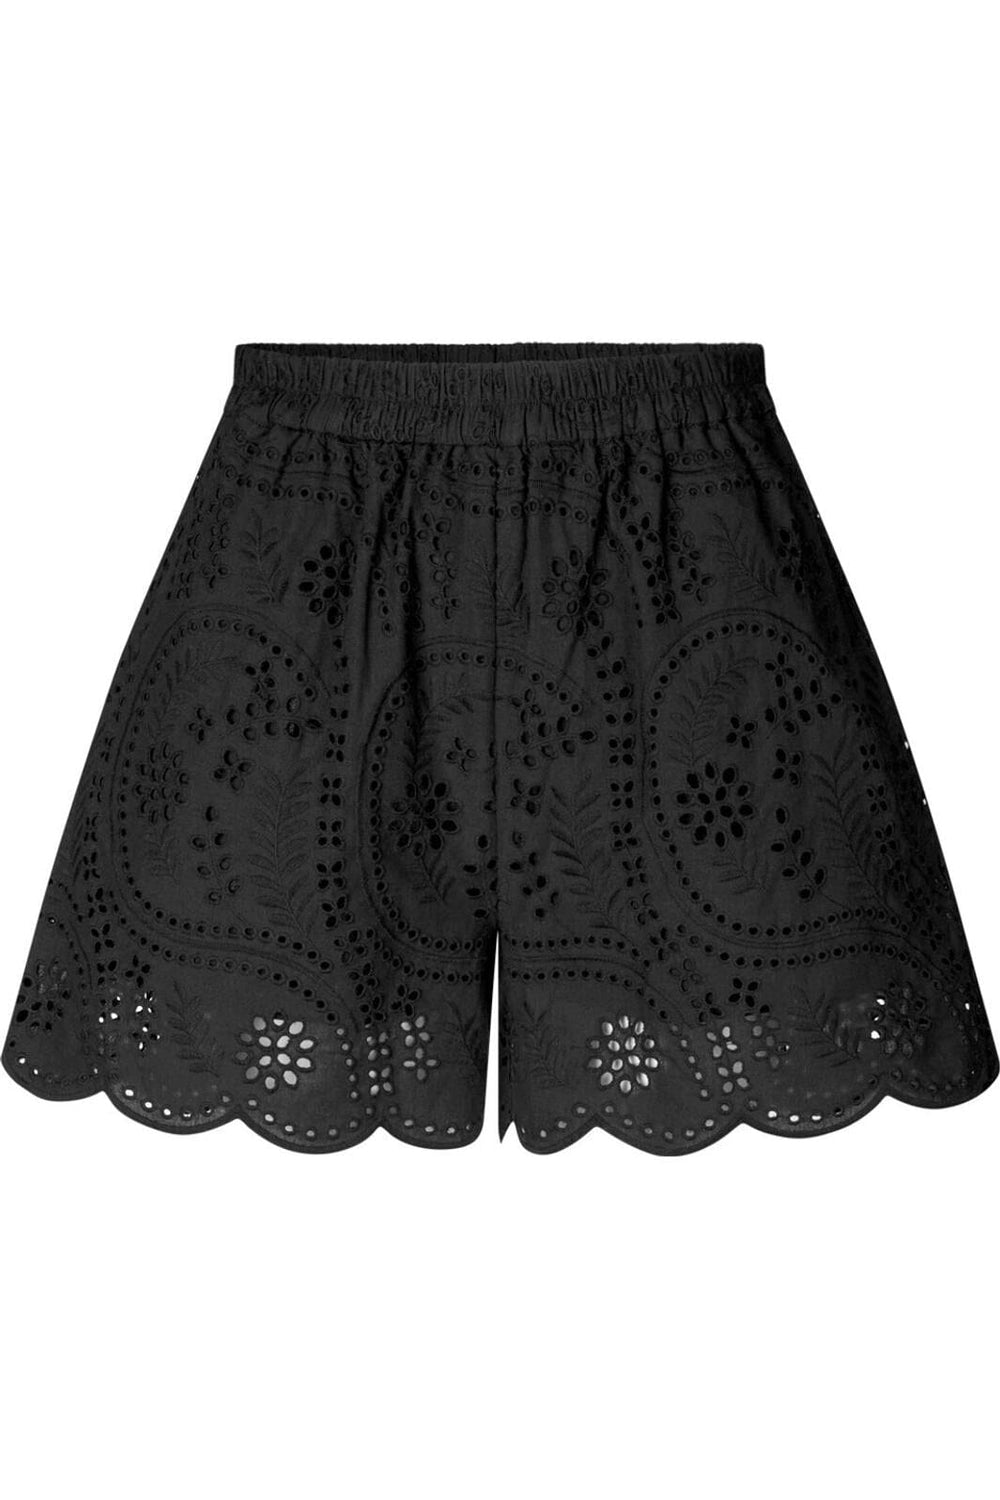 Cras - Breeze Shorts - 9999 9999 Black